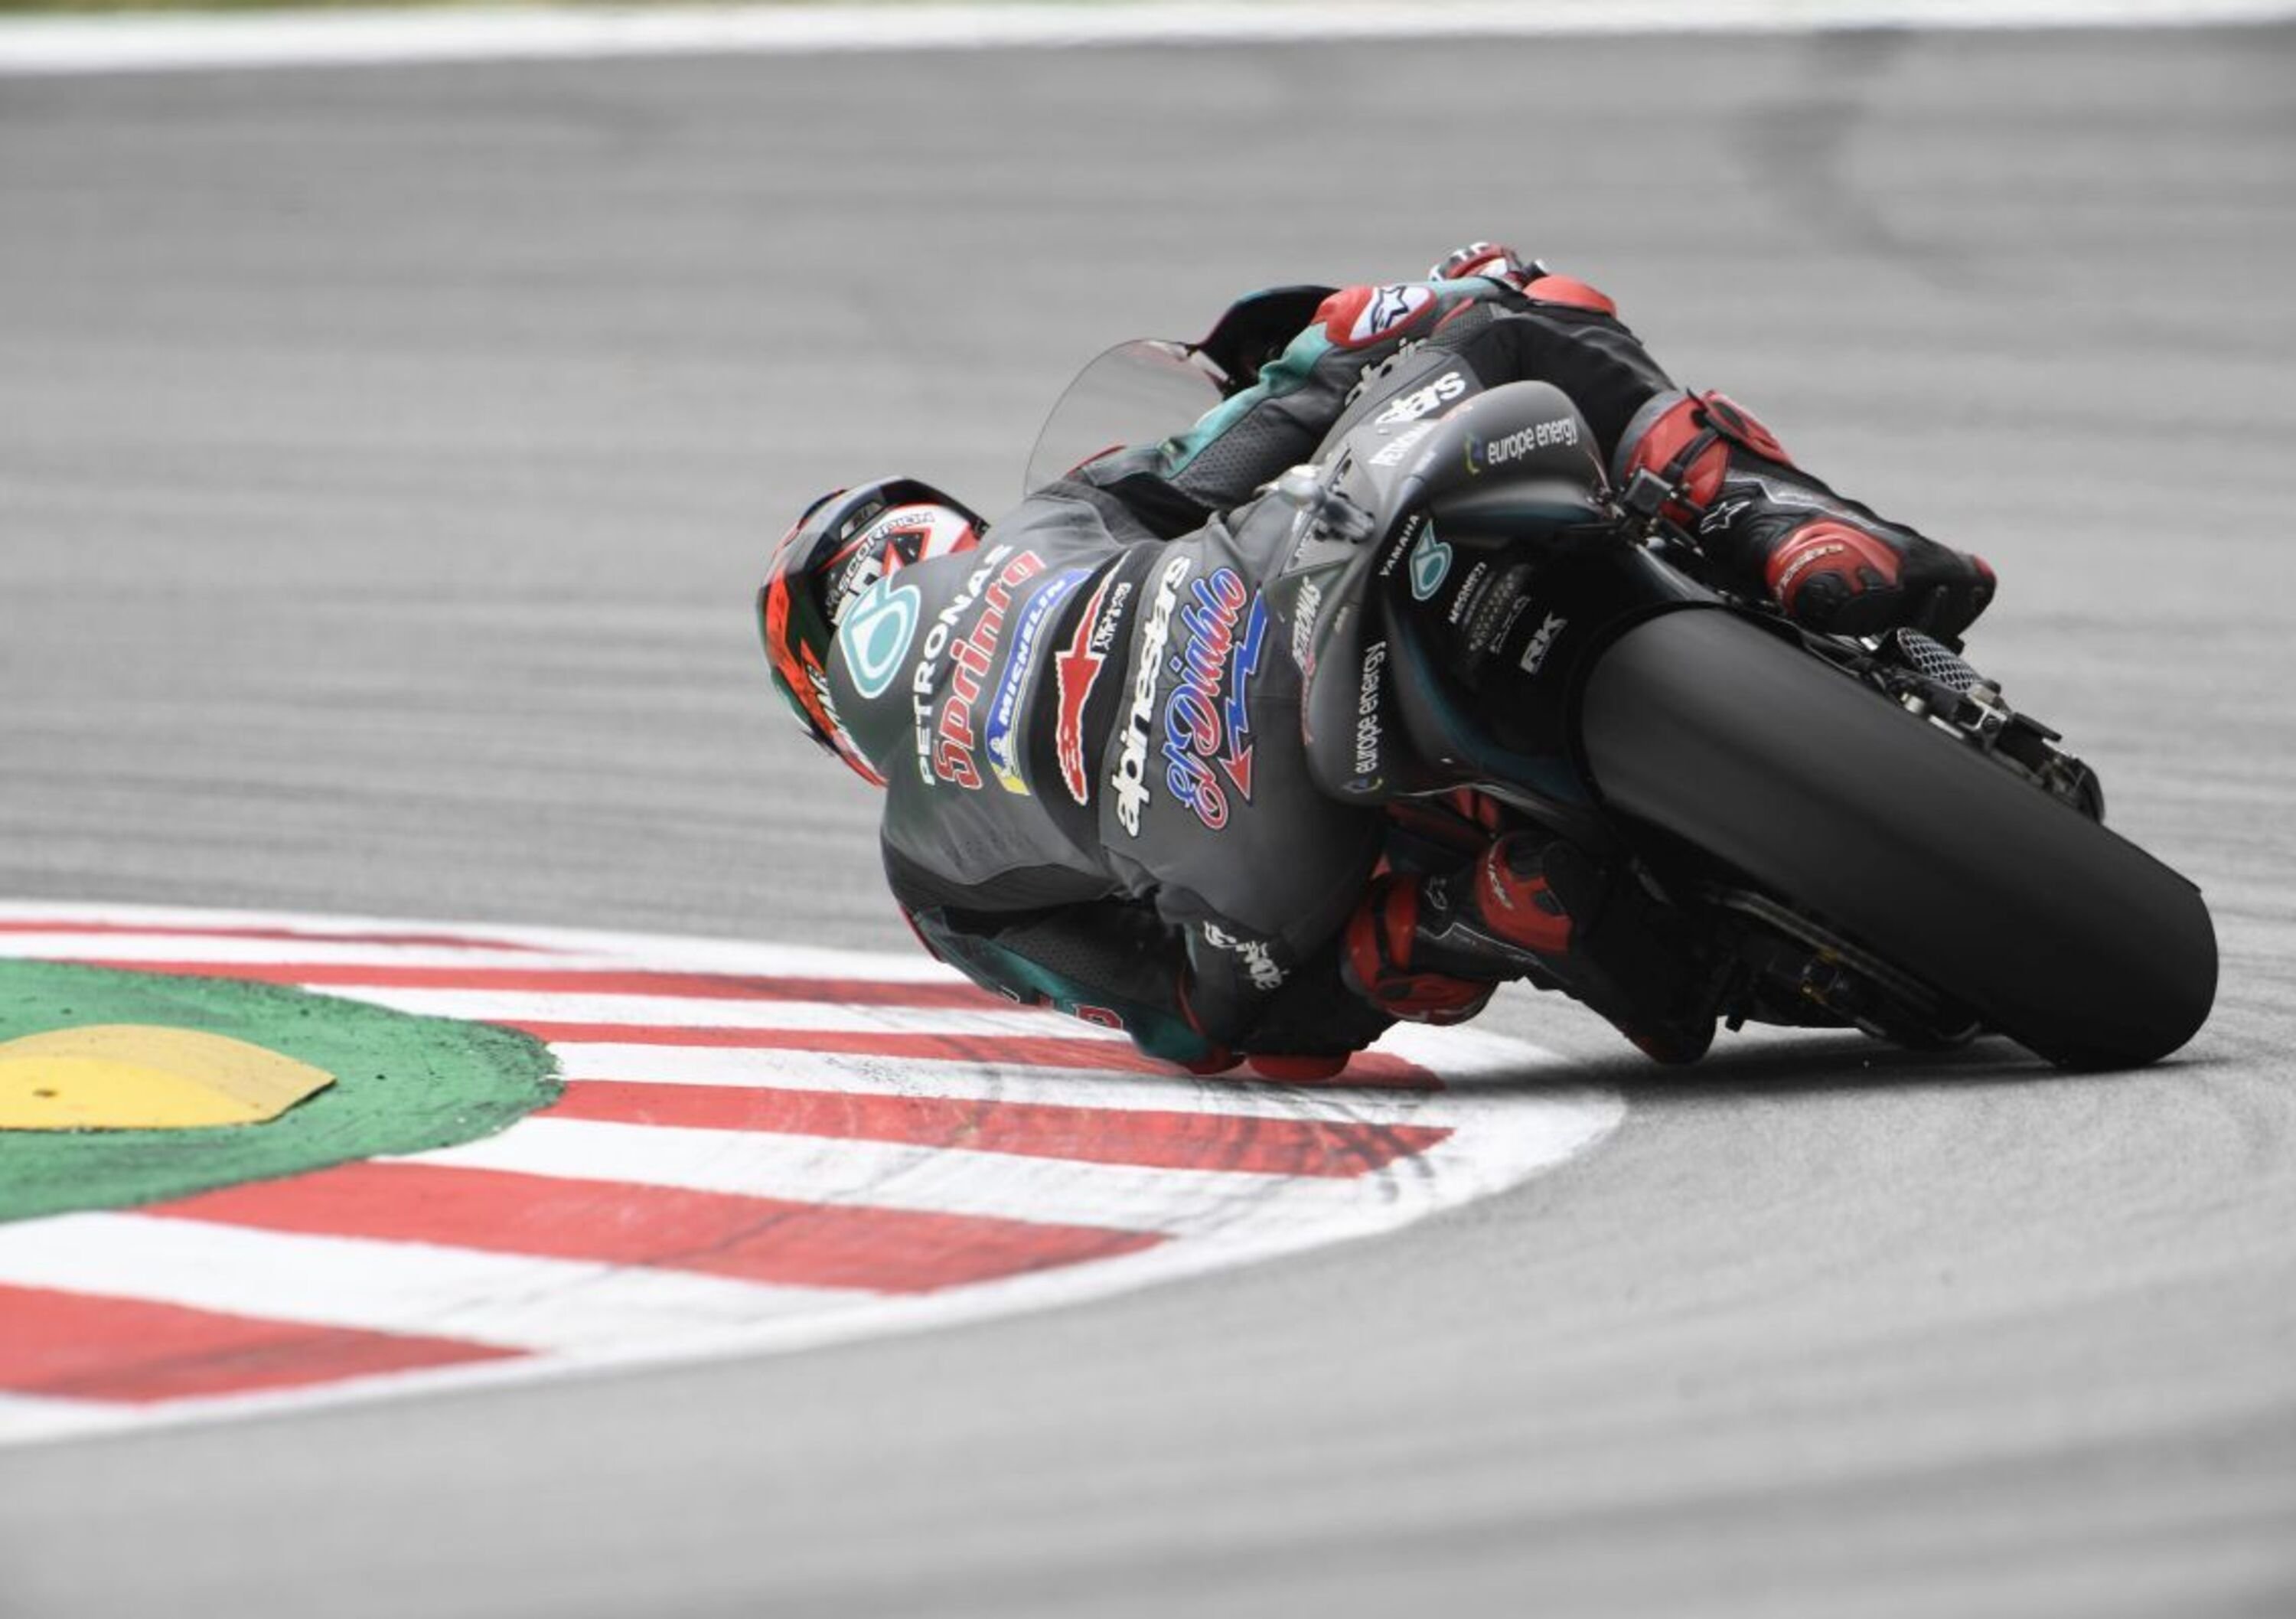 MotoGP 2019 ad Assen, Quartararo velocissimo in FP3